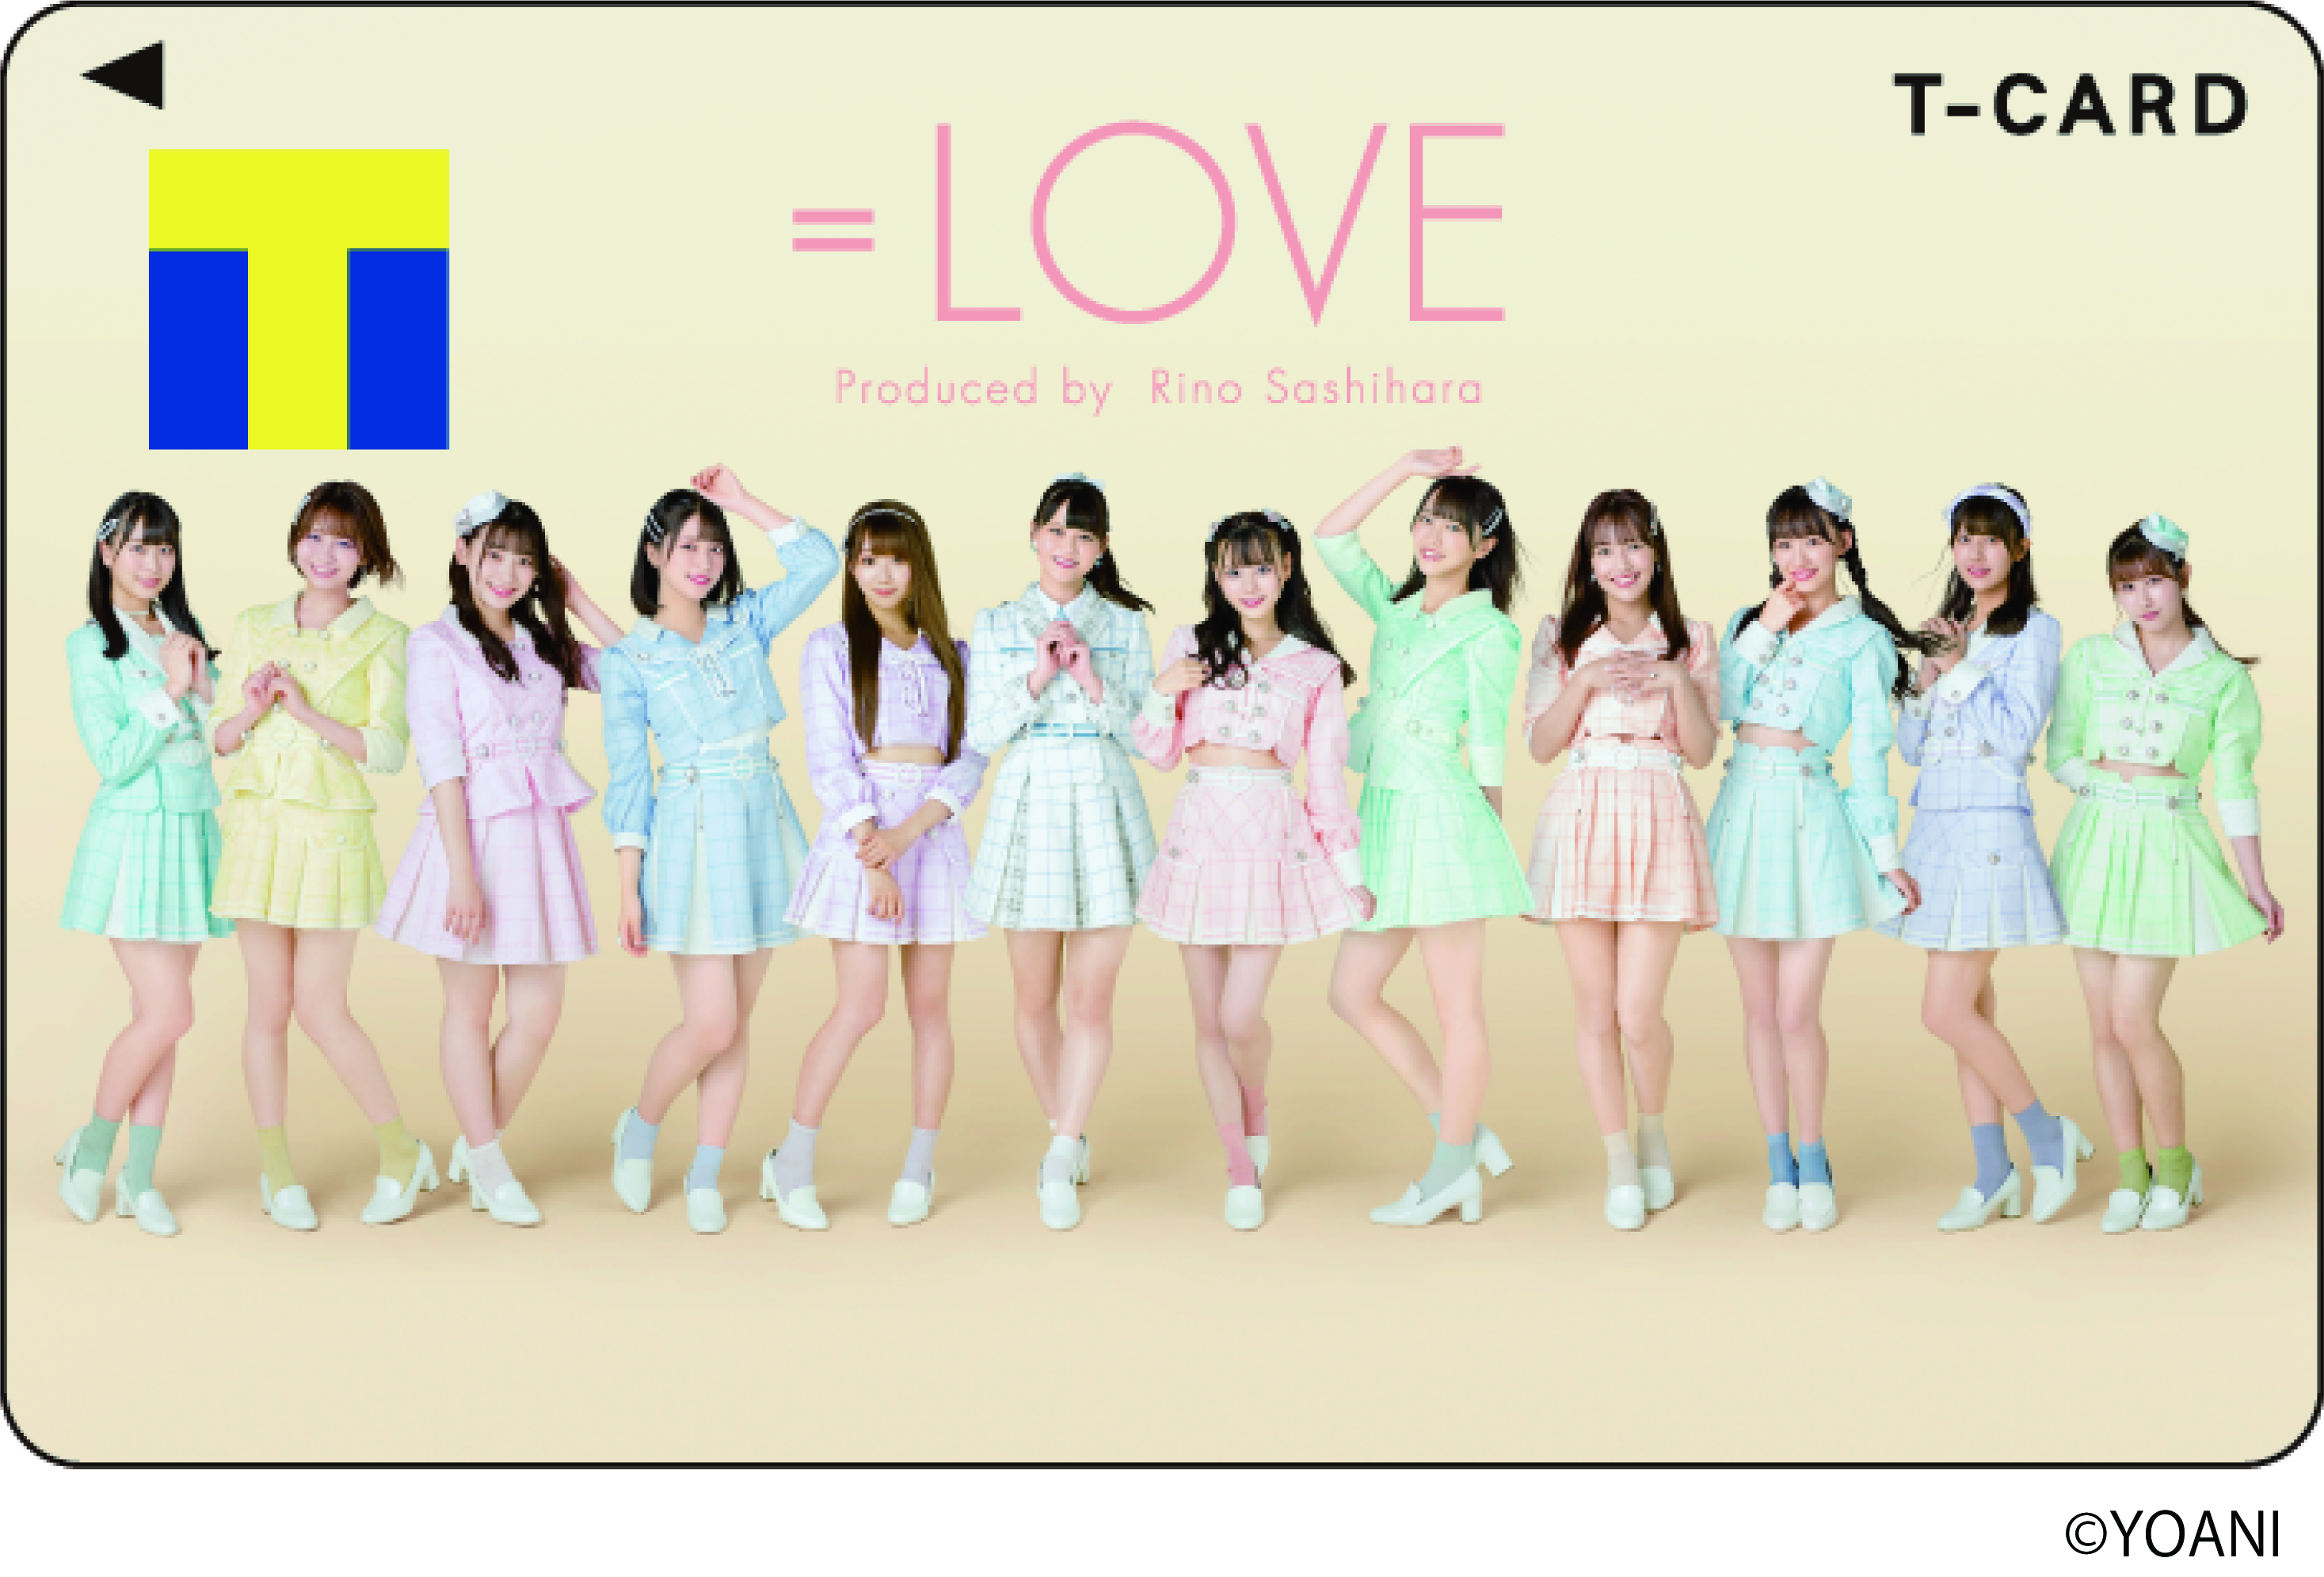 Tカード Love 2月19日 金 より店頭発行受付スタート Tファンサイトのプレスリリース